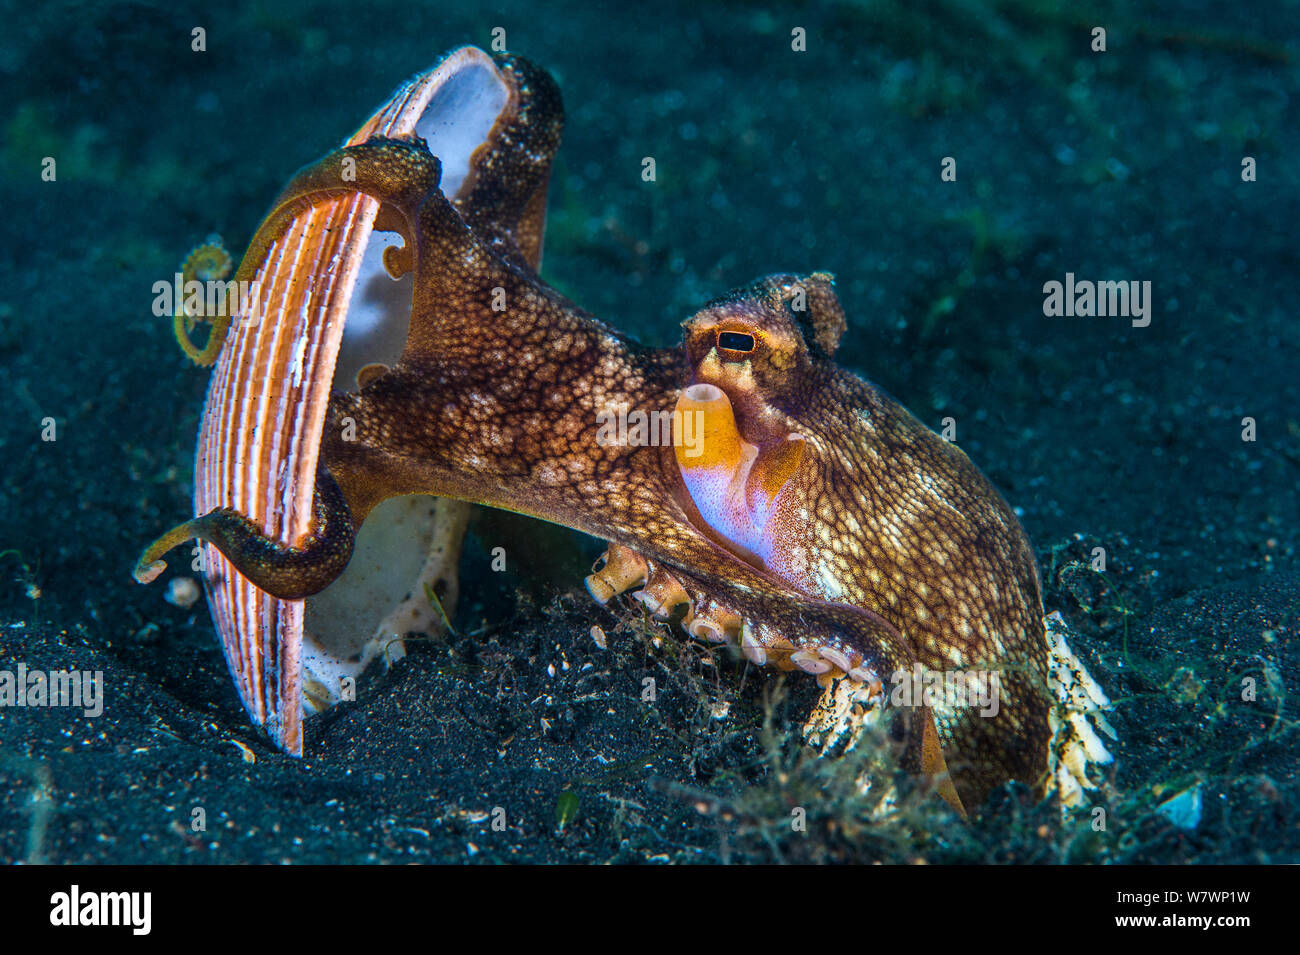 Geädert Octopus (Amphioctopus Marginatus) kommt aus seiner Höhle, Anheben Stück von Shell. Bitung, Nord Sulawesi, Indonesien. Lembeh Strait, Molukken Meer. Stockfoto